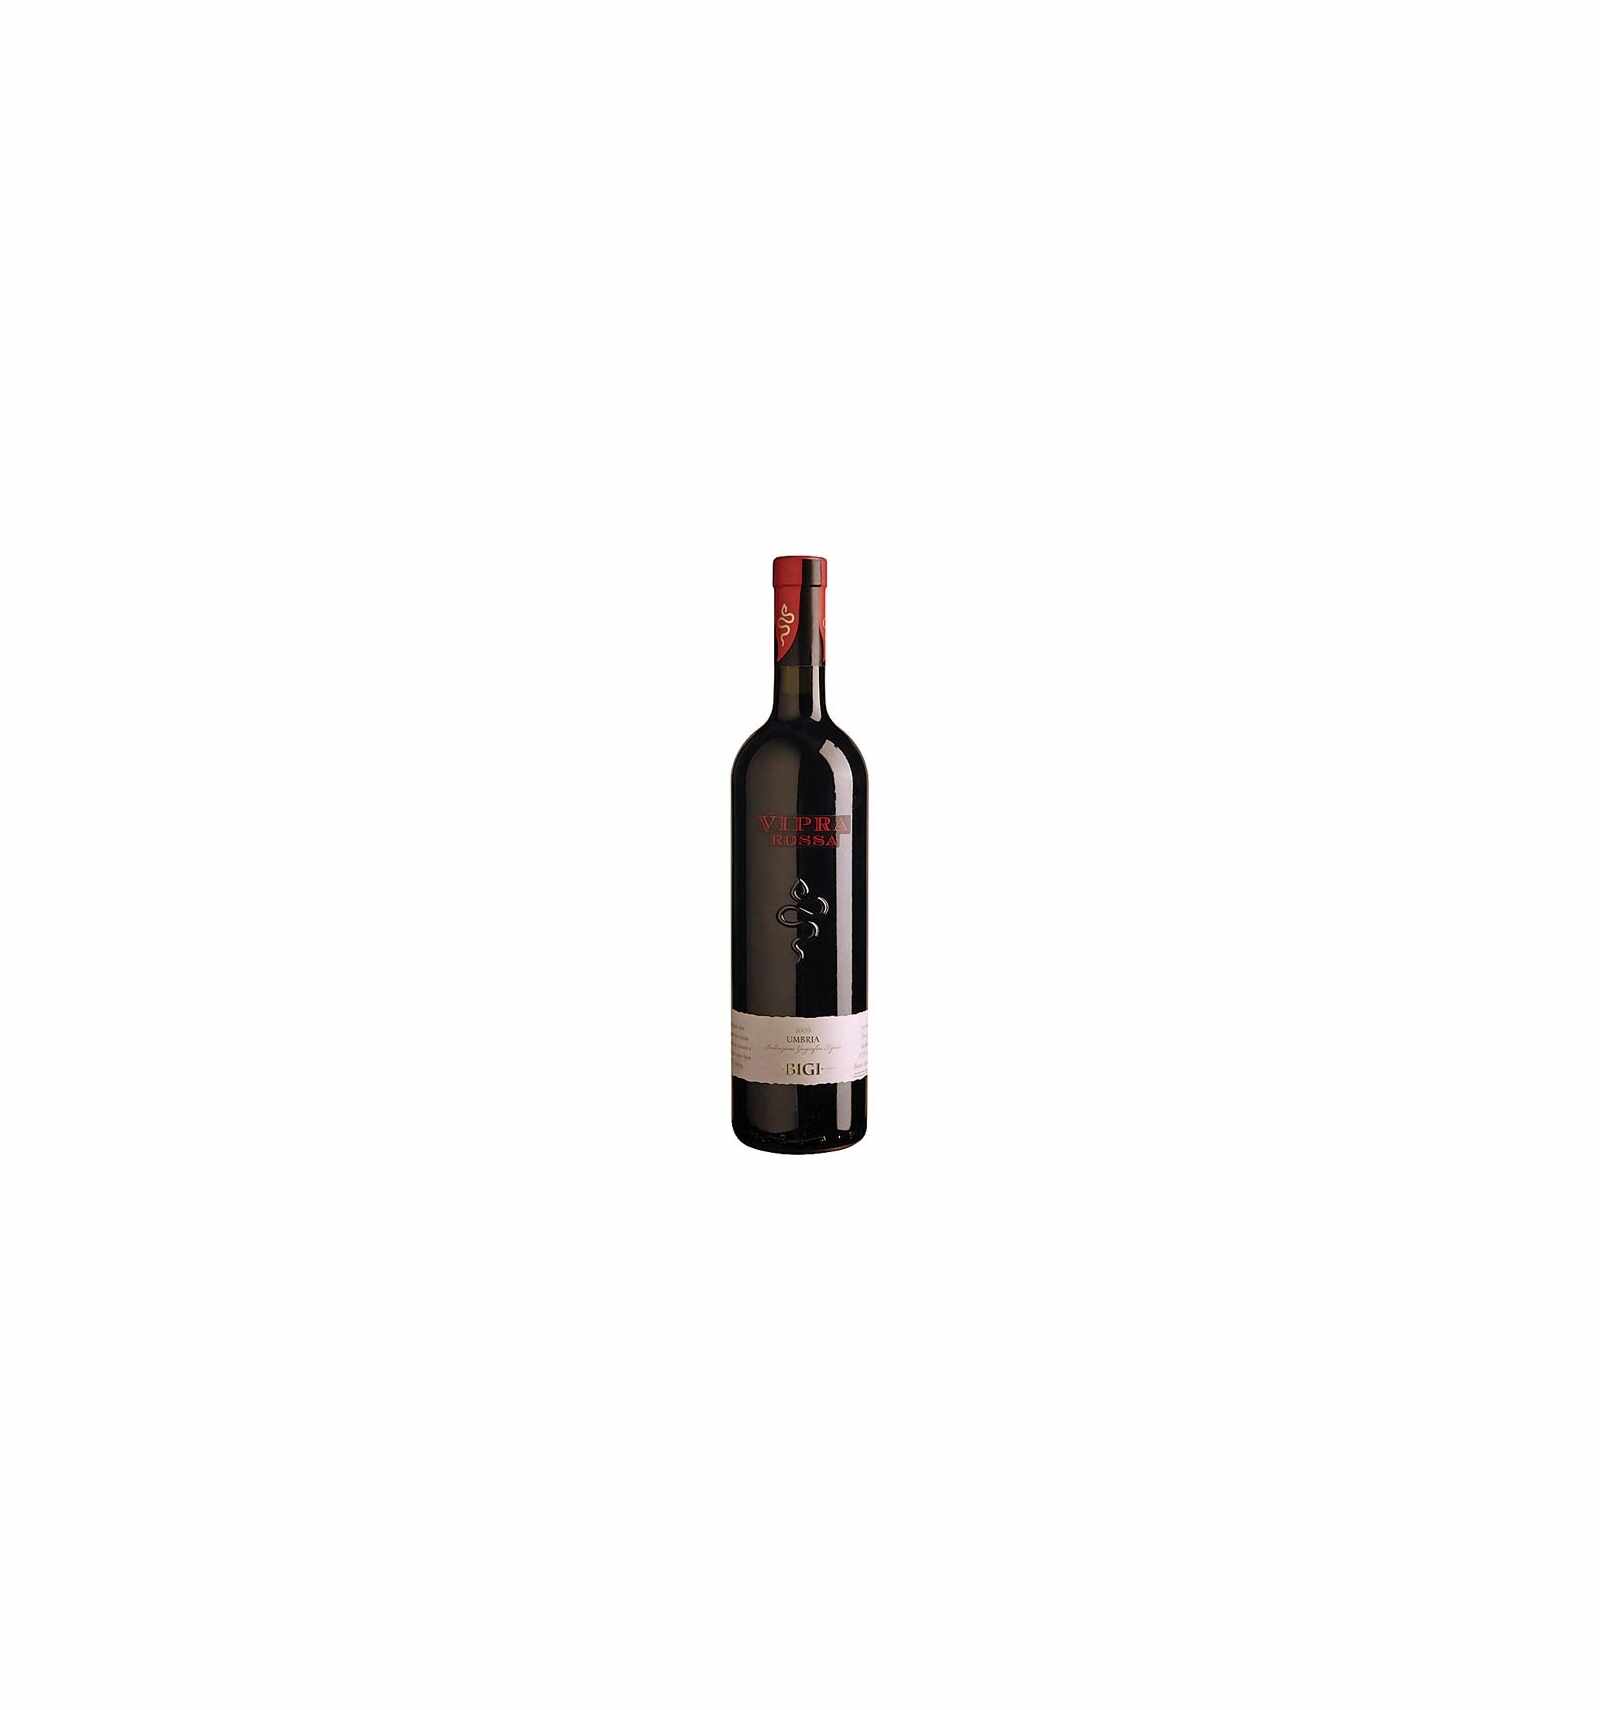 Vin rosu, Vipra Rossa, Bigi Umbria, 0.75L, Italia